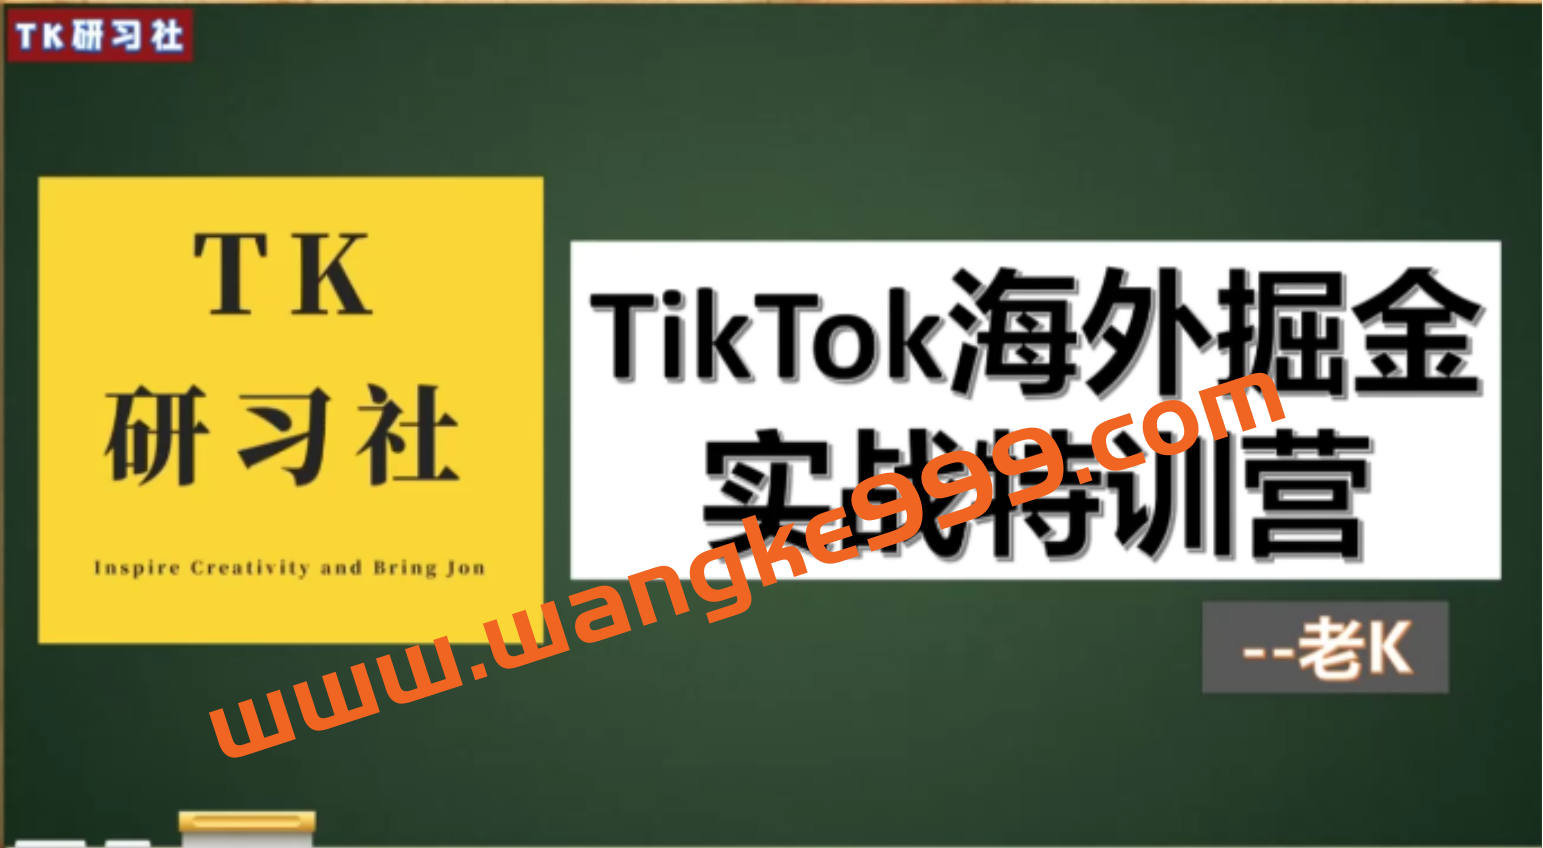 TK研习社-TikTok海外掘金实操特训营插图